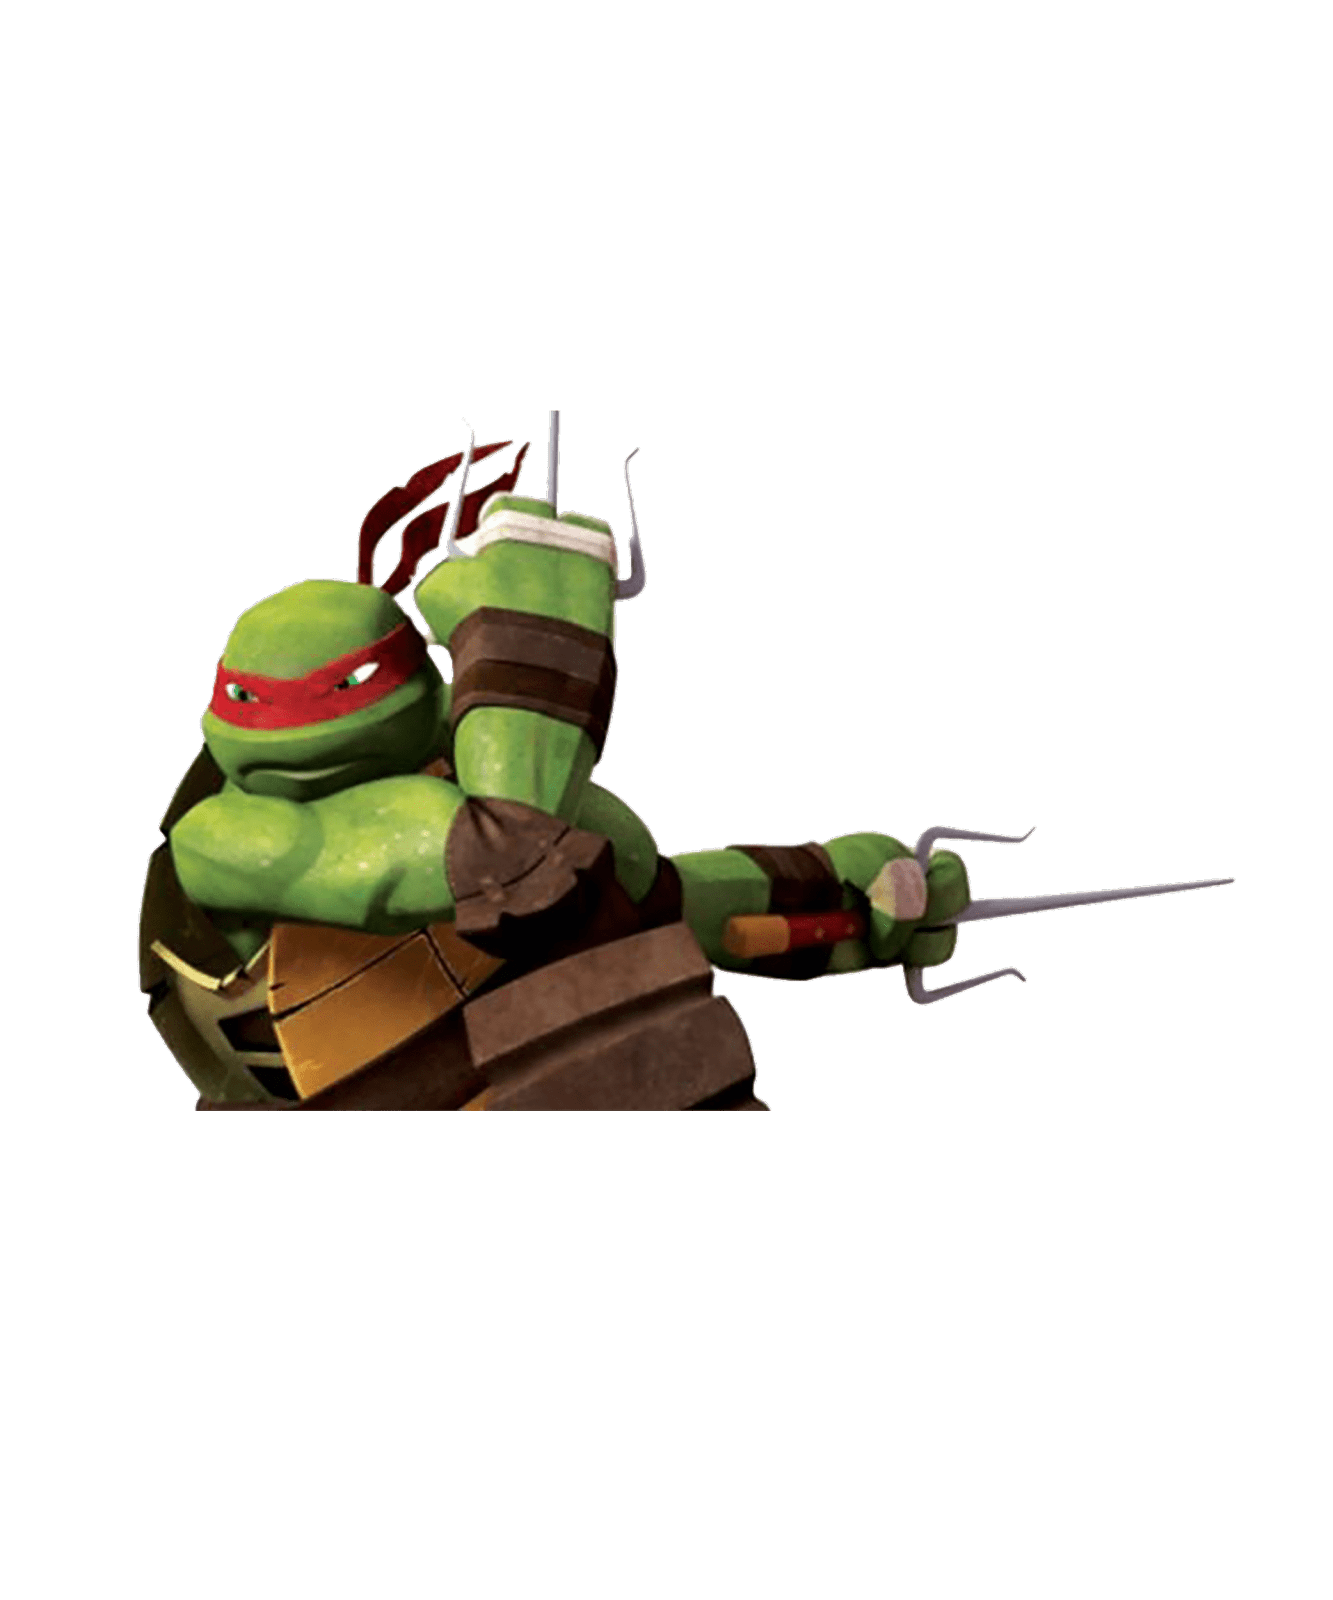 Groot prente van las tortugas ninja met deursigtige agtergrond in png-formaat